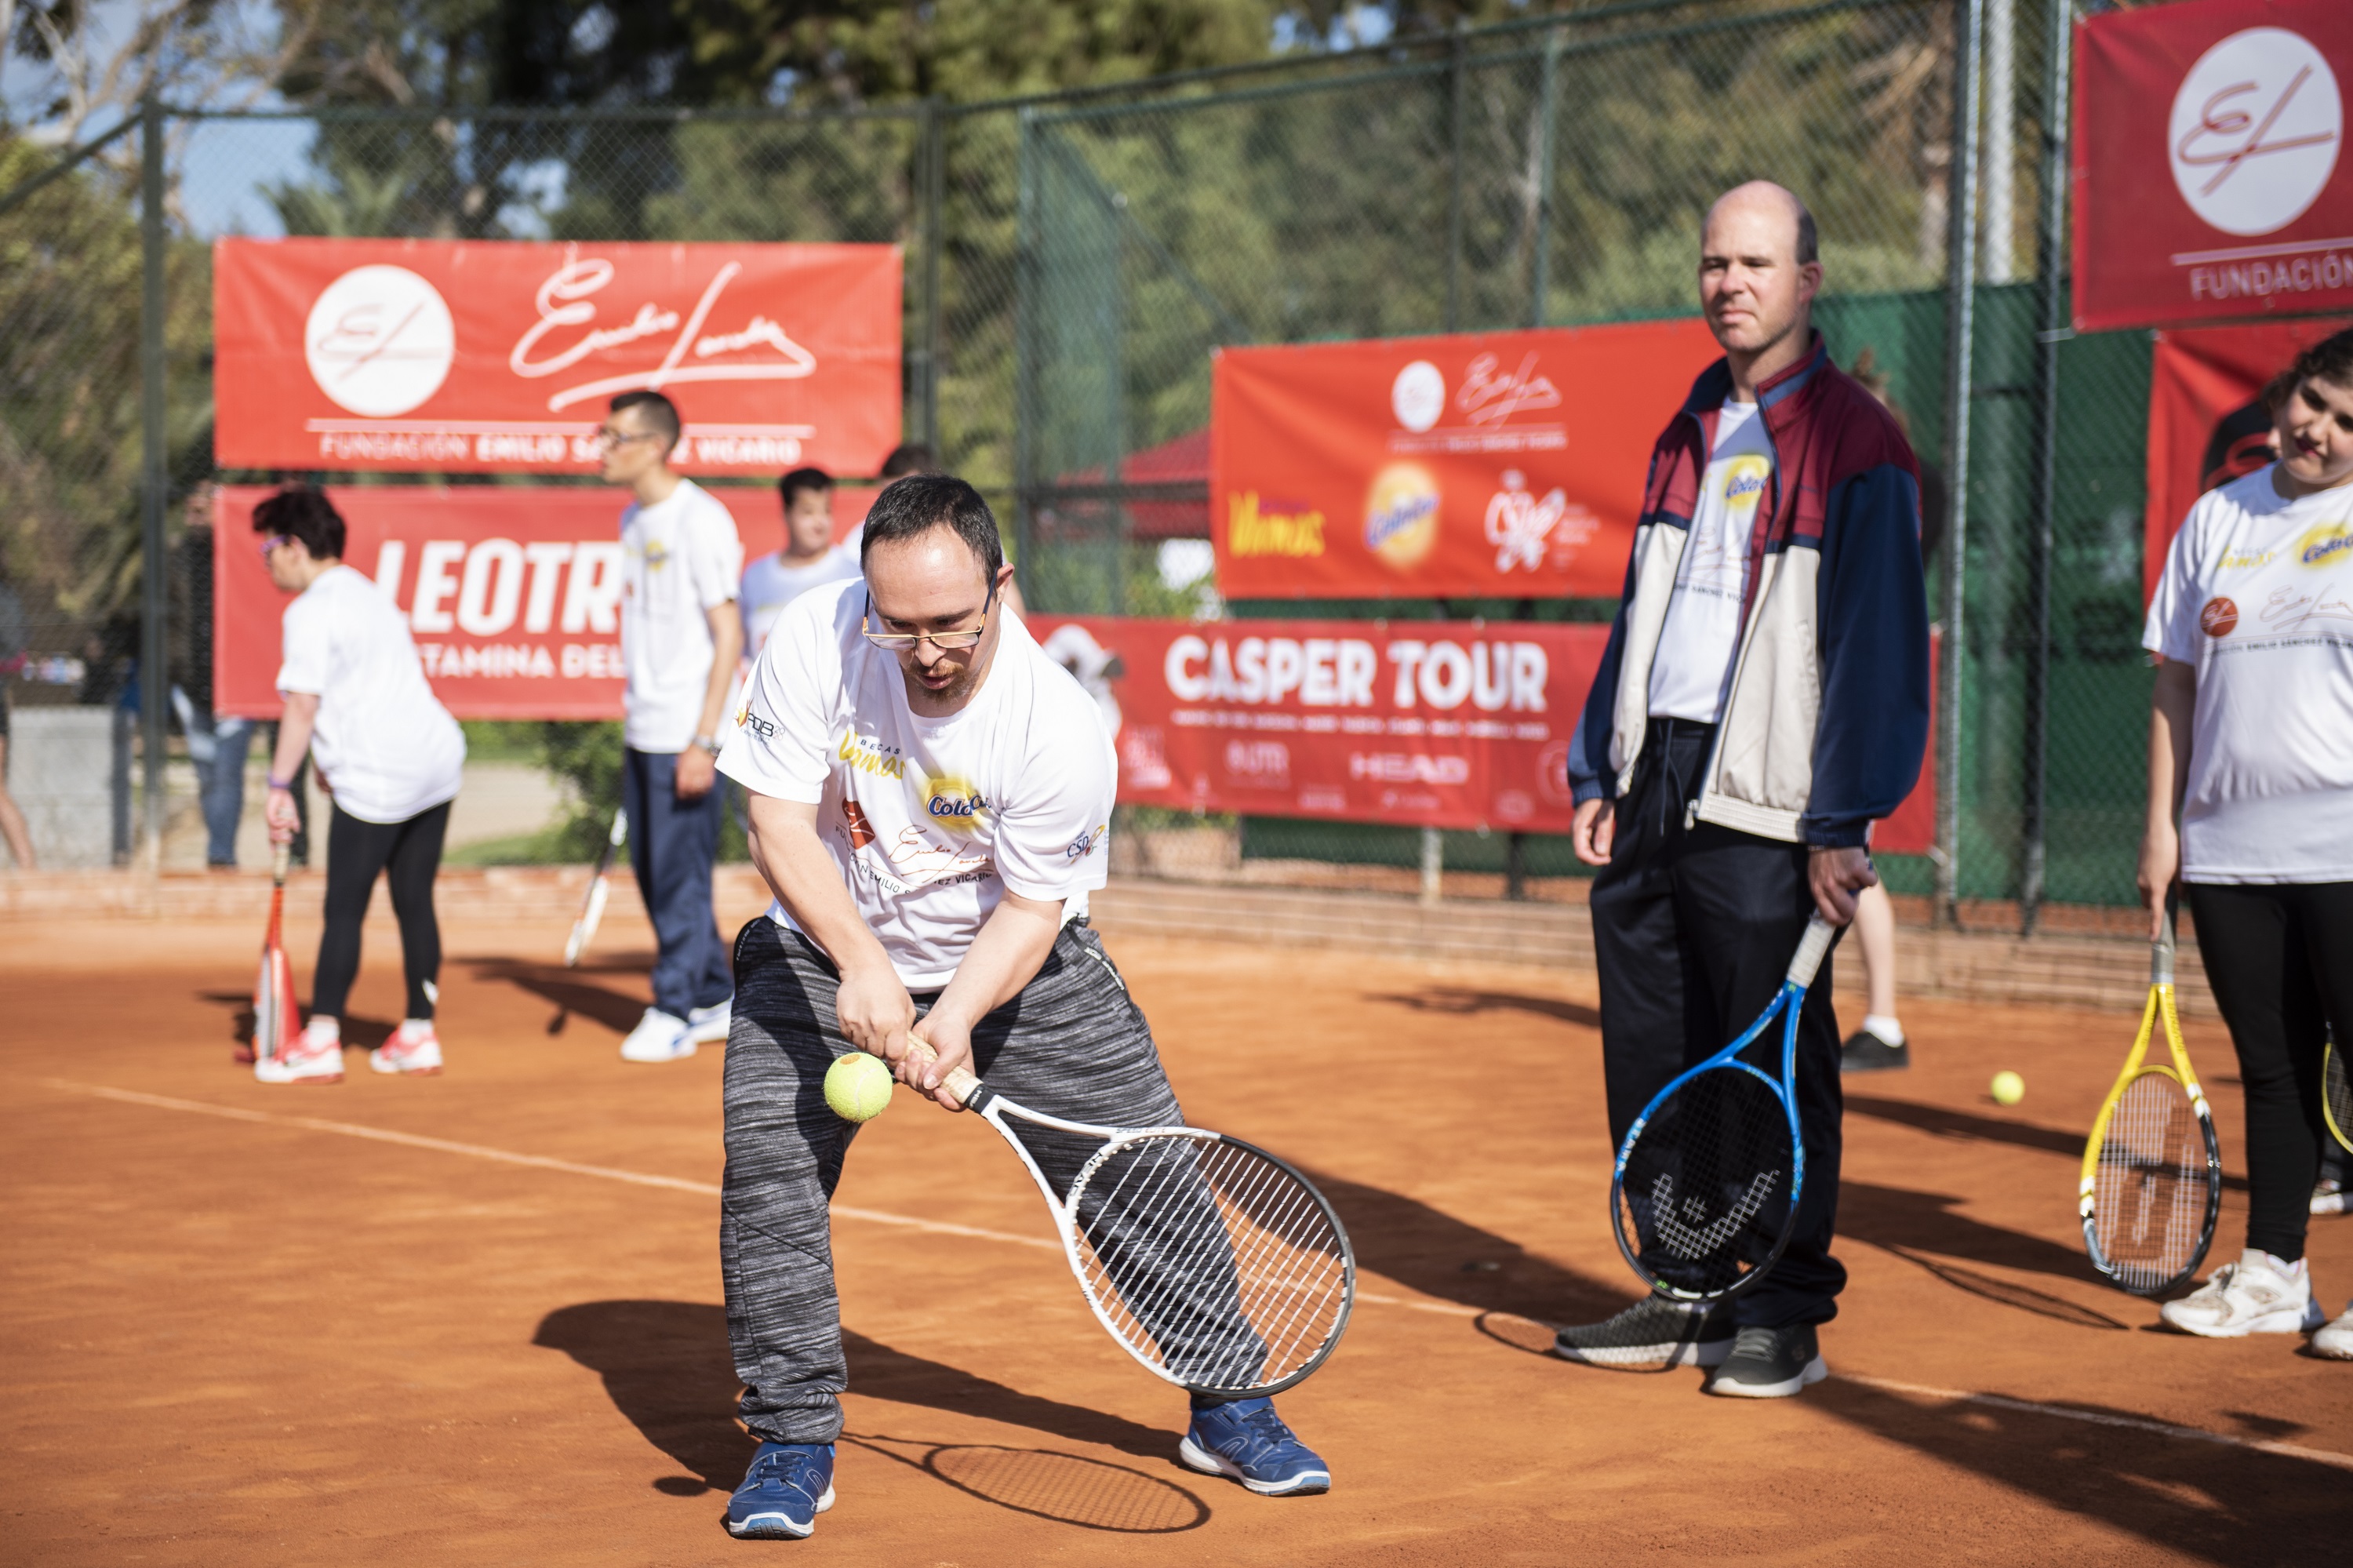 Image for Clausura 7º Curso Tenis para capacidades diversas y Entrega Becas Vamos ColaCao, CSD y Fundación Emilio Sánchez Vicario